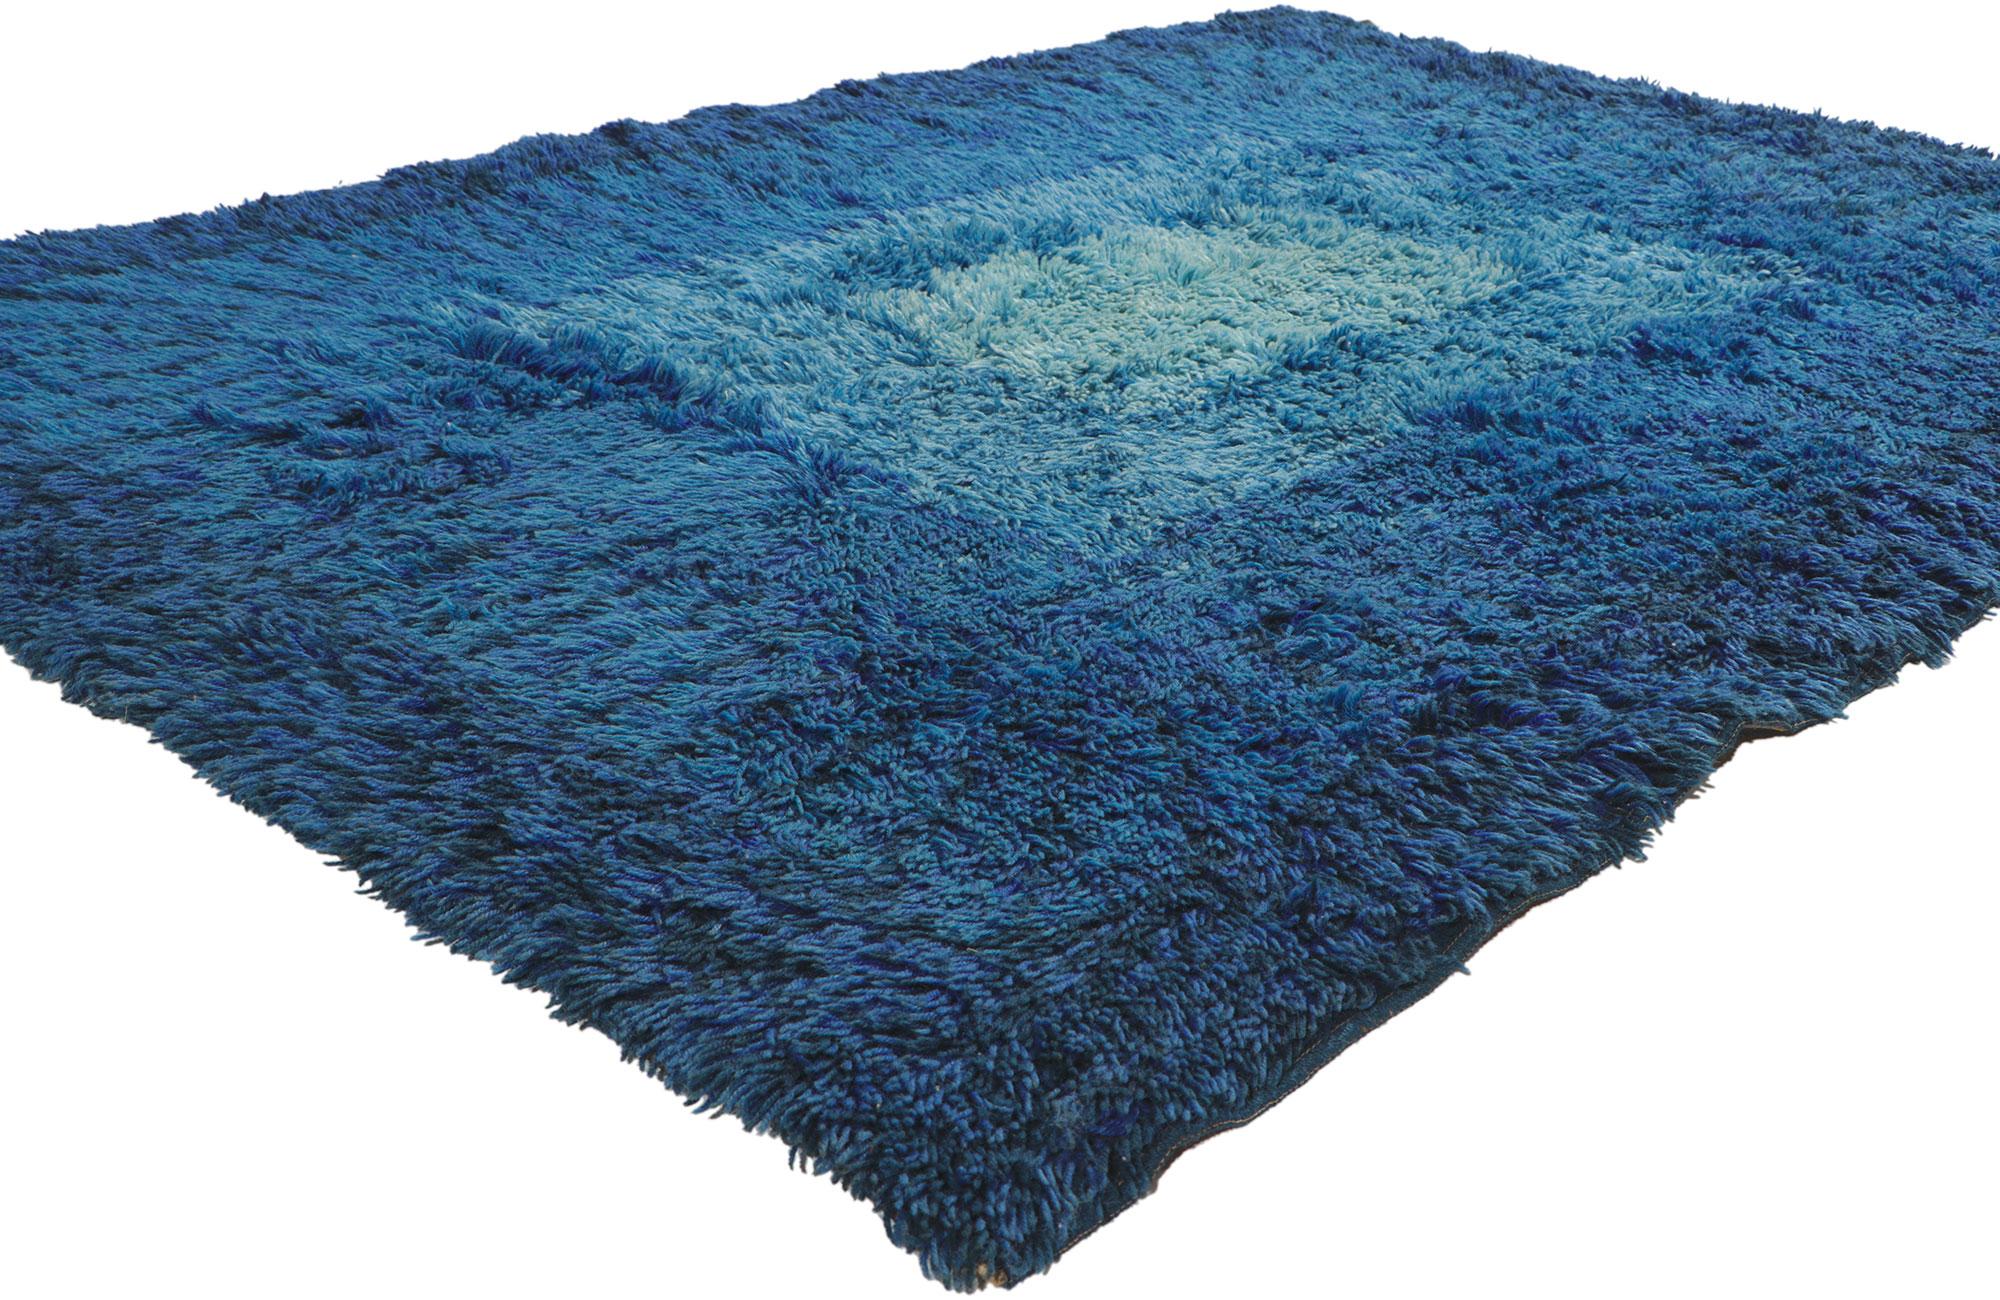 78511 Vintage Swedish Rya Rug, 04'05 x 06'02.
Dieser handgeknüpfte schwedische Rya-Teppich im skandinavisch-modernen Stil besticht durch seine unglaubliche Detailtreue und Textur und ist eine faszinierende Vision gewebter Schönheit. Das dynamische